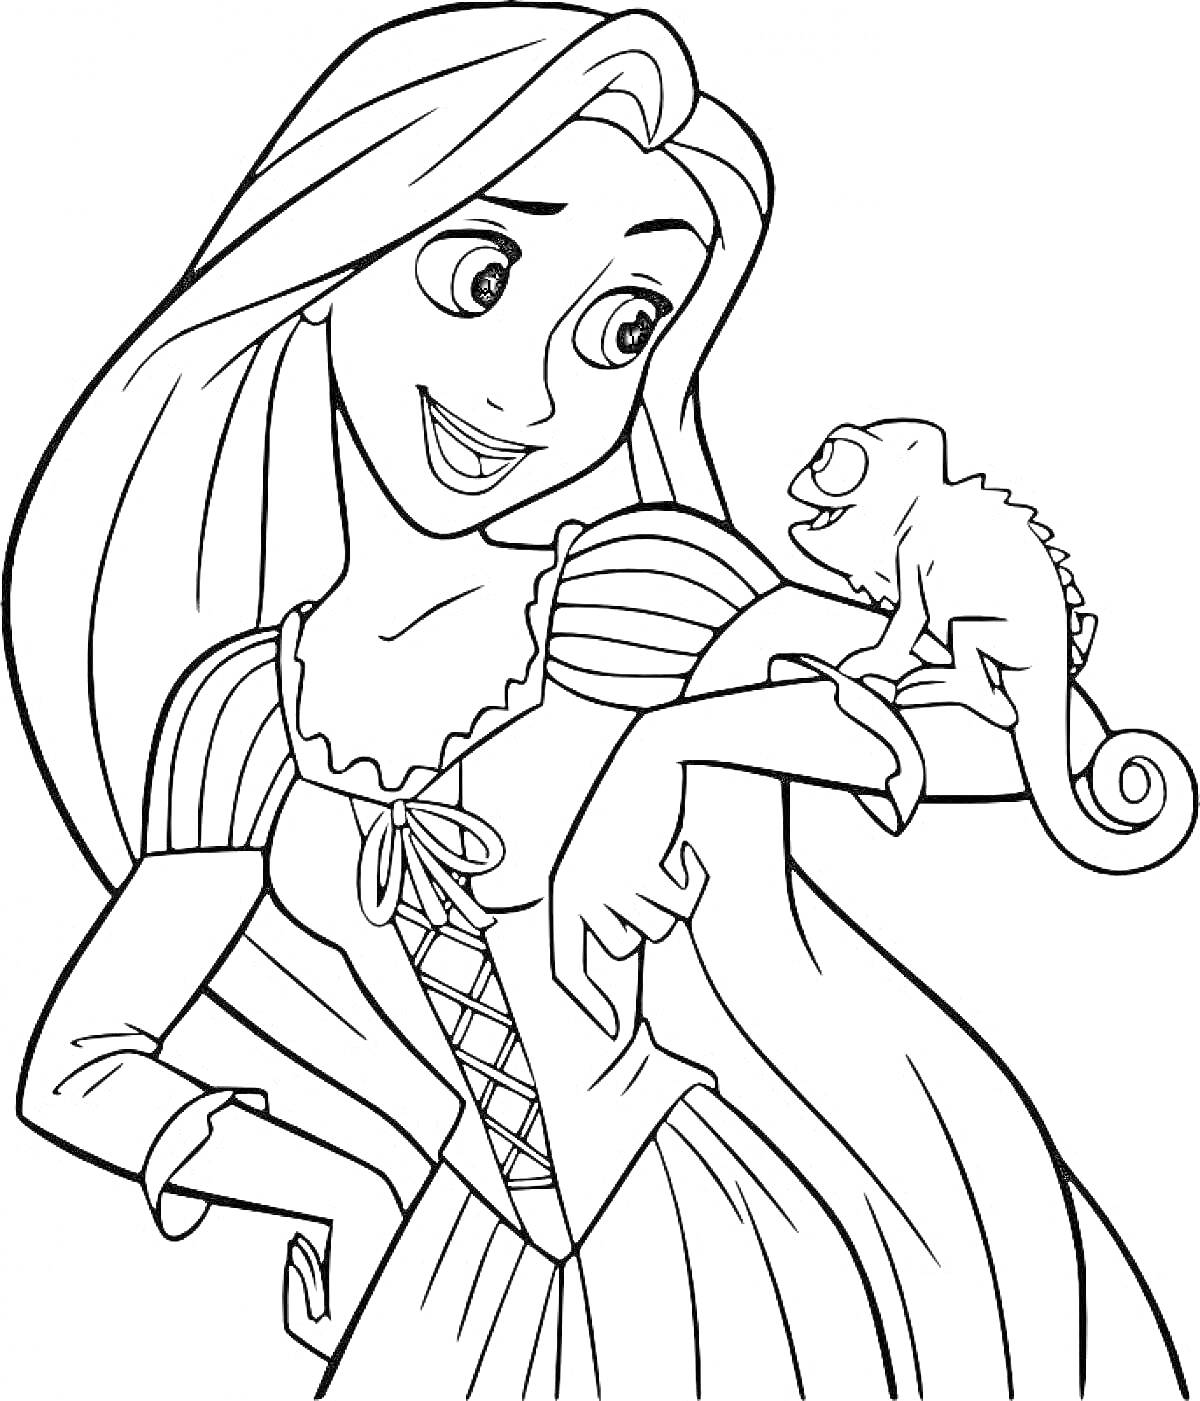 Принцесса с длинными волосами и хамелеоном